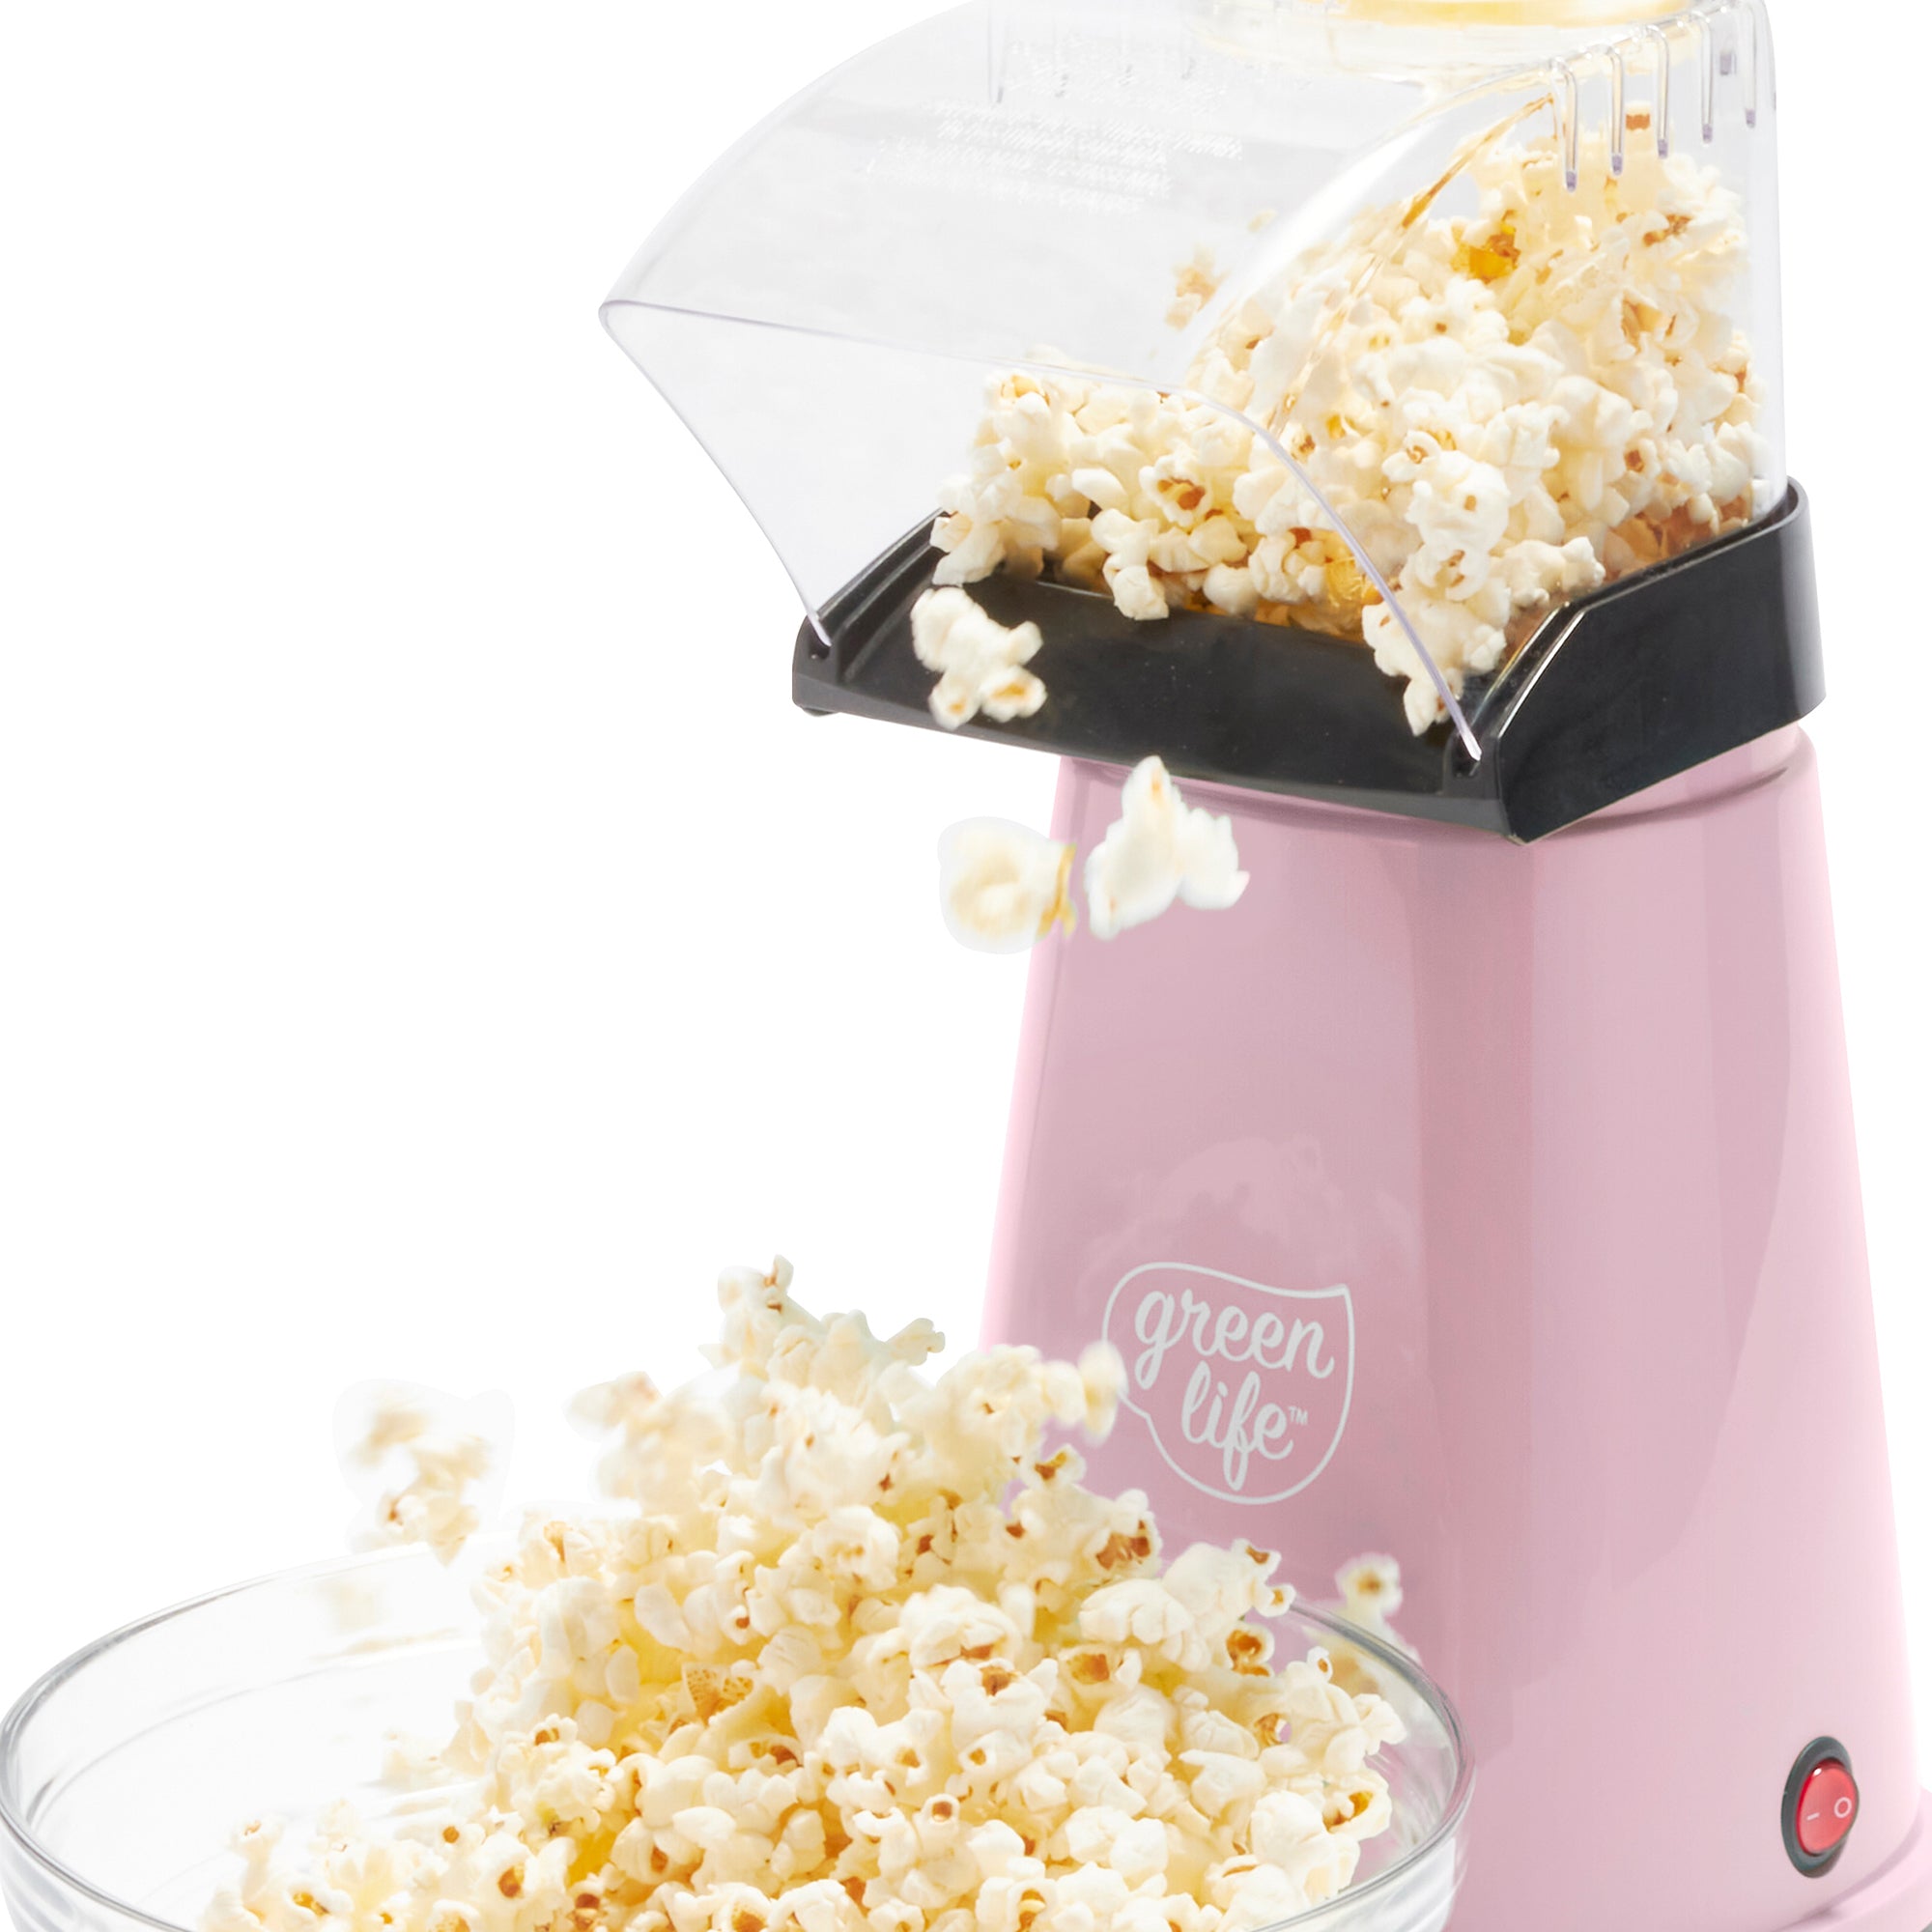 Popcorn Machine Hot Air Electric Popper Kernel Corn Maker 16-cups Bpa Free  No Oil (White) 5 Core POP W 